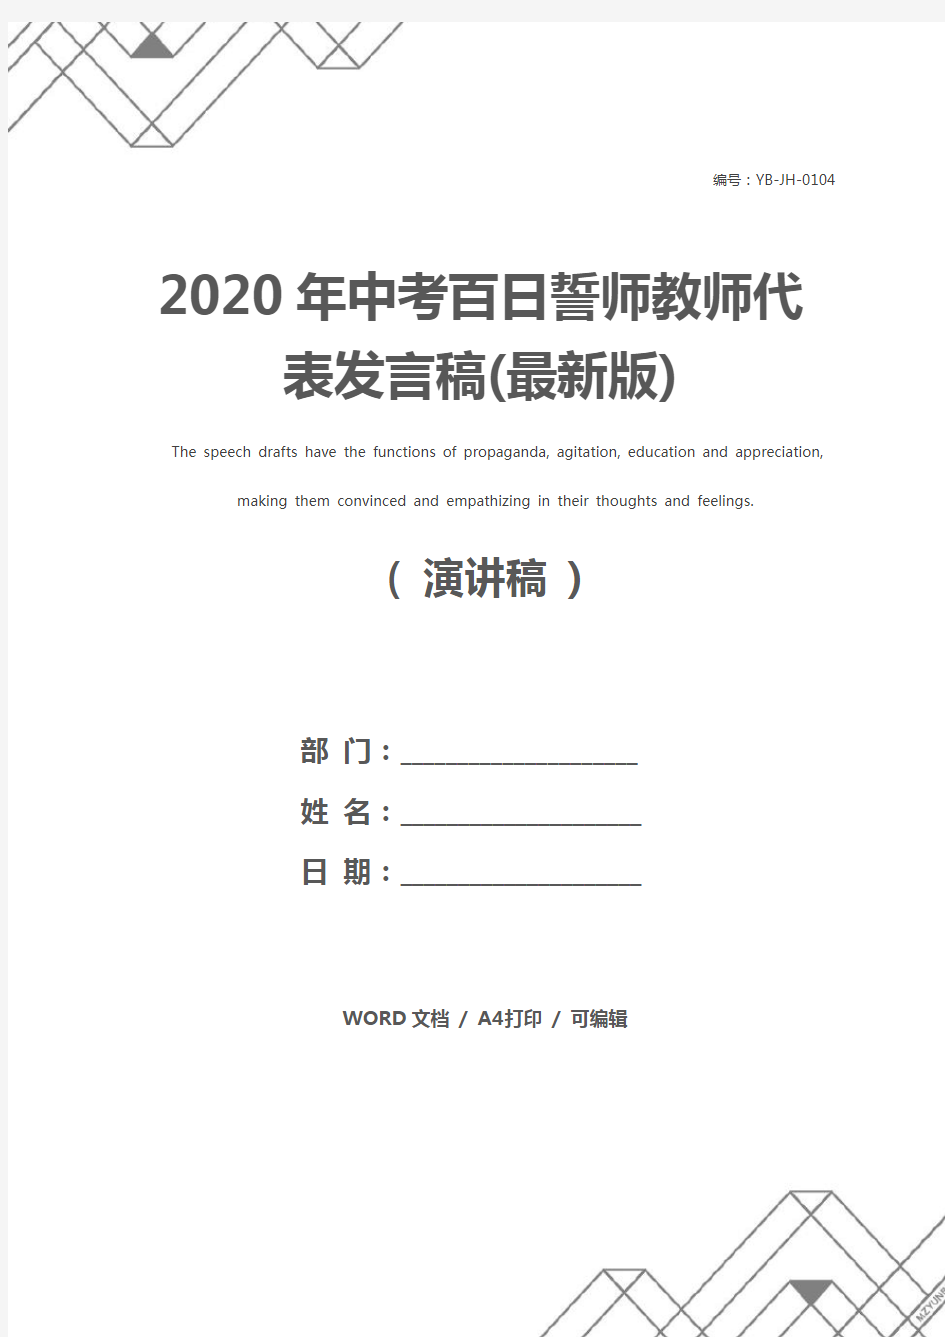 2020年中考百日誓师教师代表发言稿(最新版)